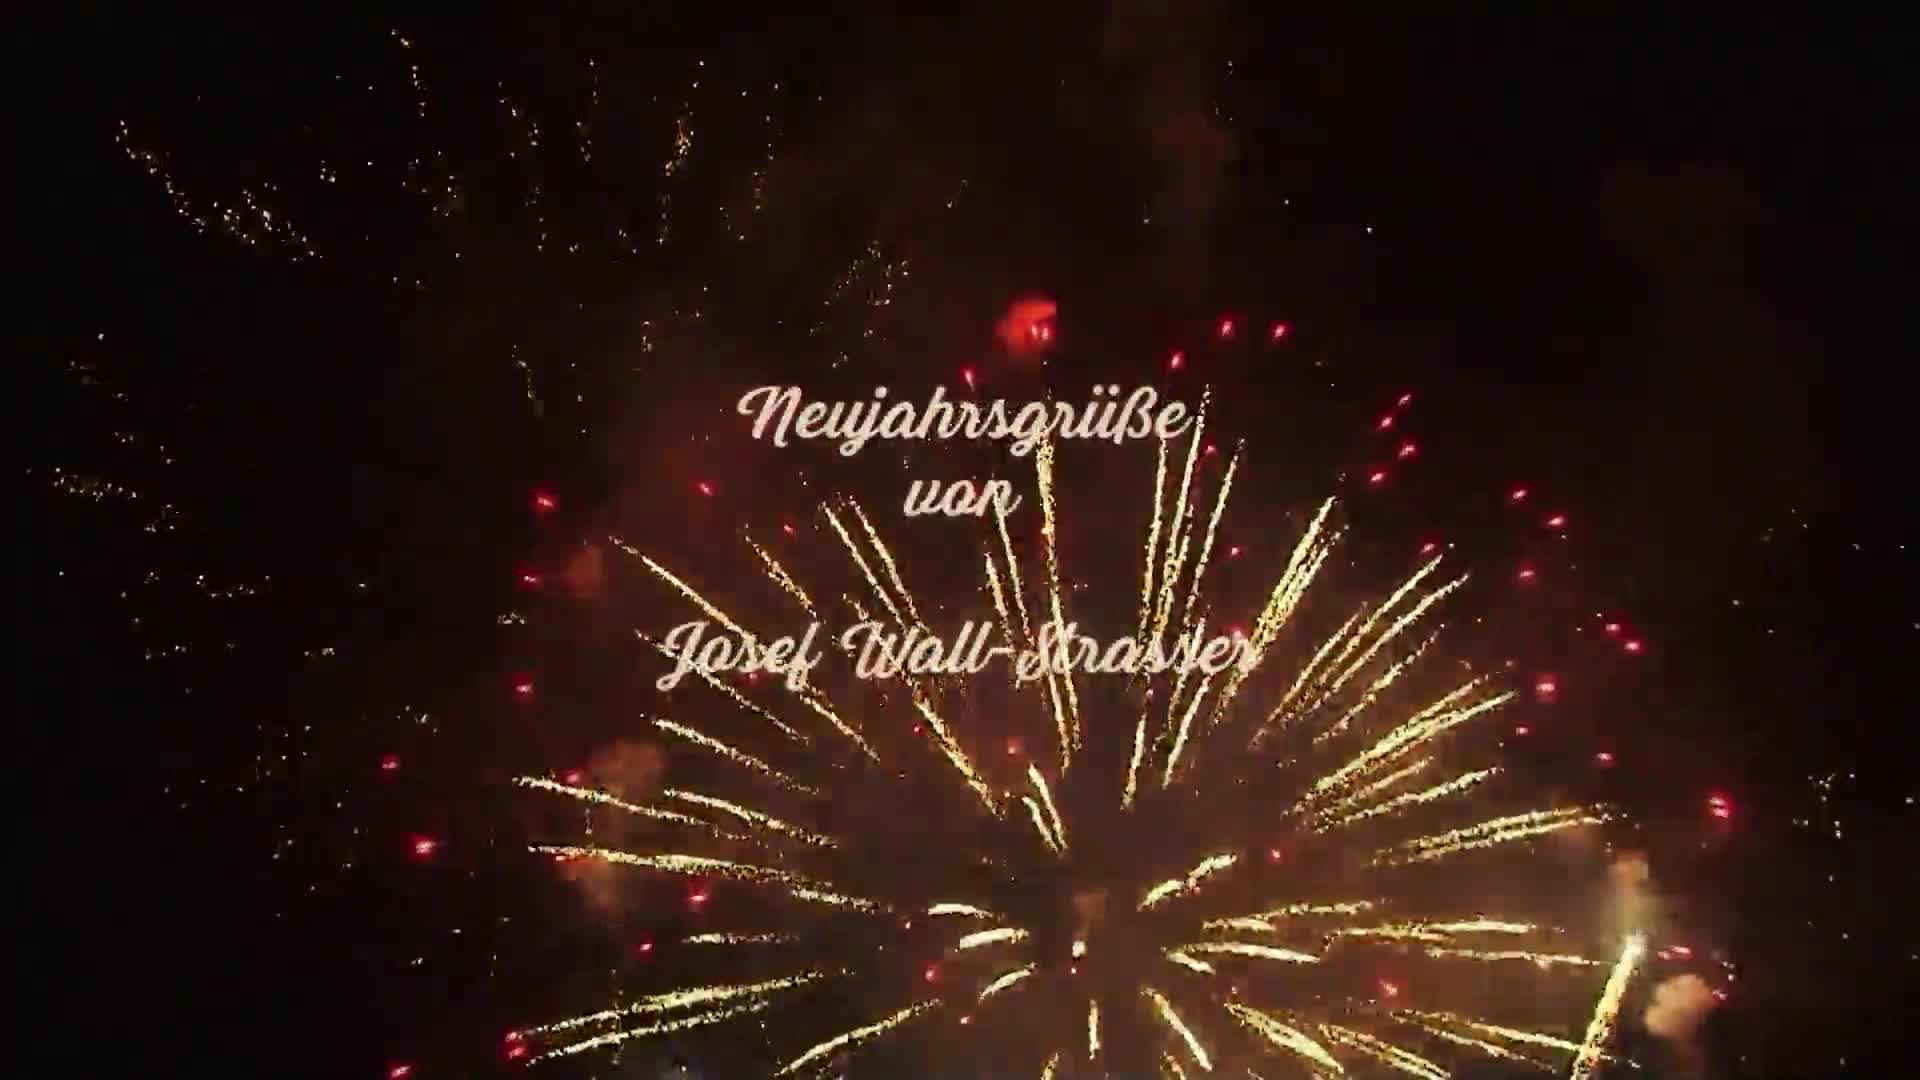 Neujahrswünsche von Bürgermeister Josef Wall-Strasser